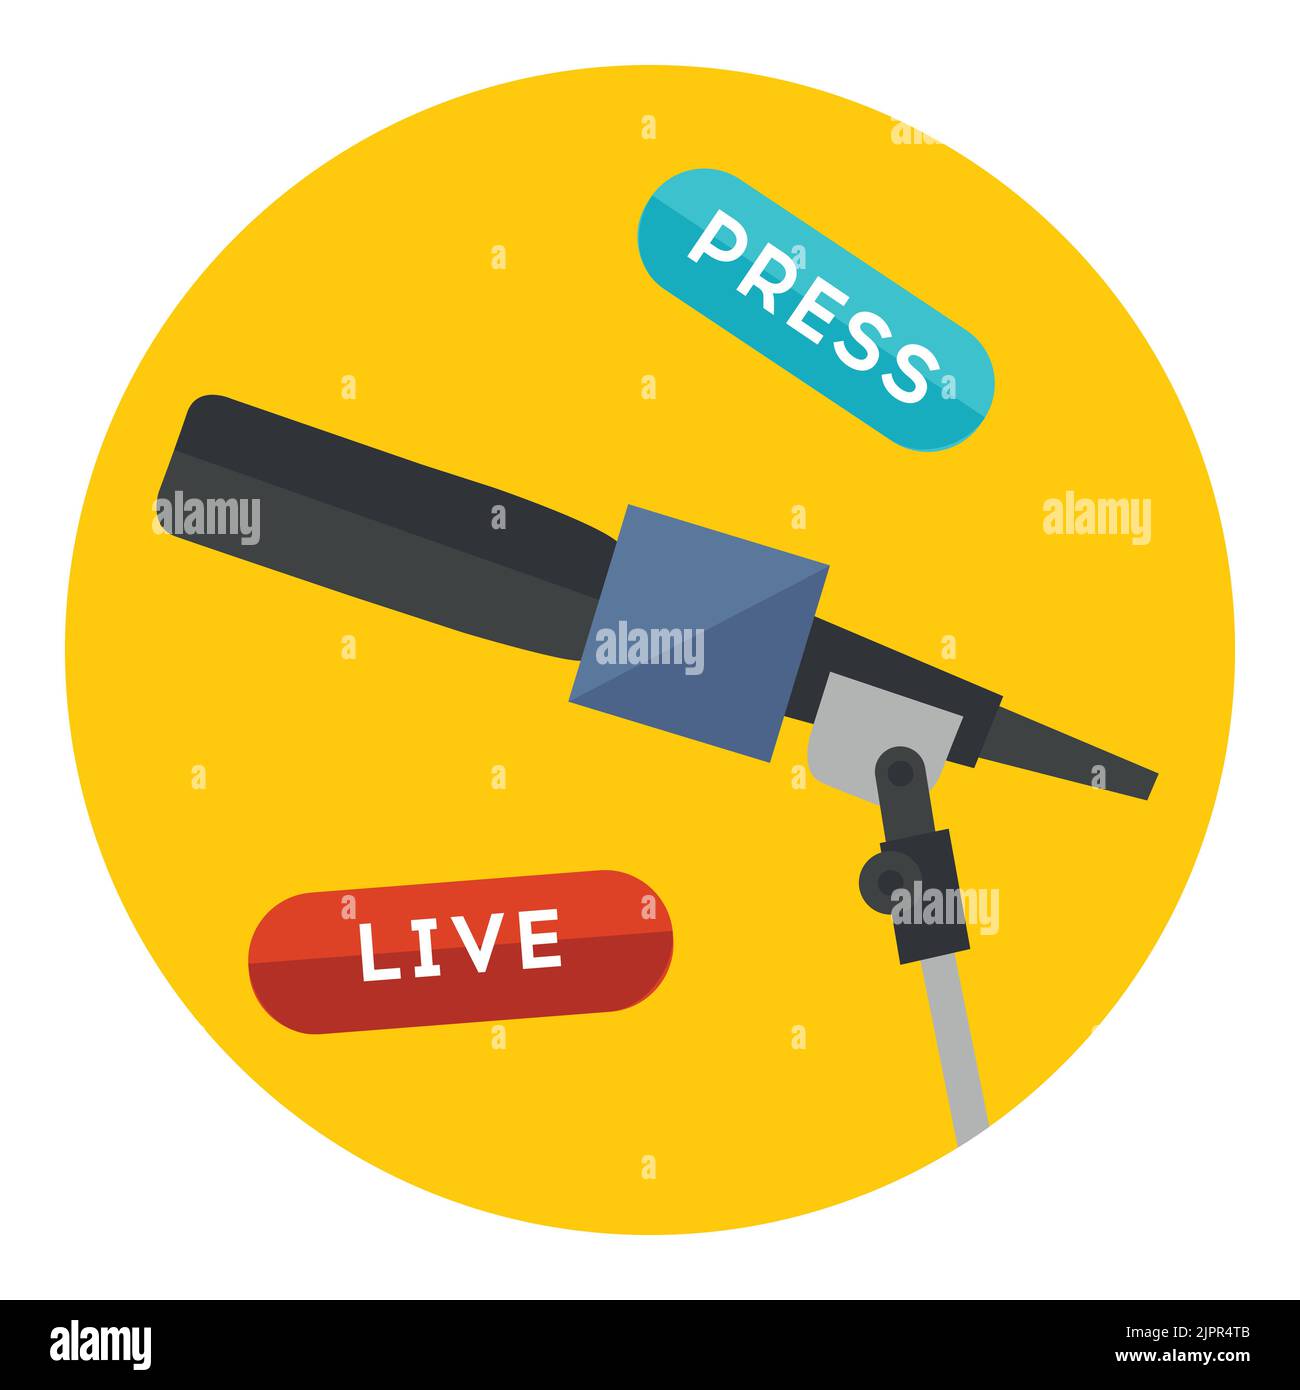 Live Press Symbol Konzept. Veranschaulichung von Interviews in den Massenmedien Mikrofon mit Live- und Pressezeichen. Flaches Vektorsymbol in einem weiß isolierten Kreis Stock Vektor